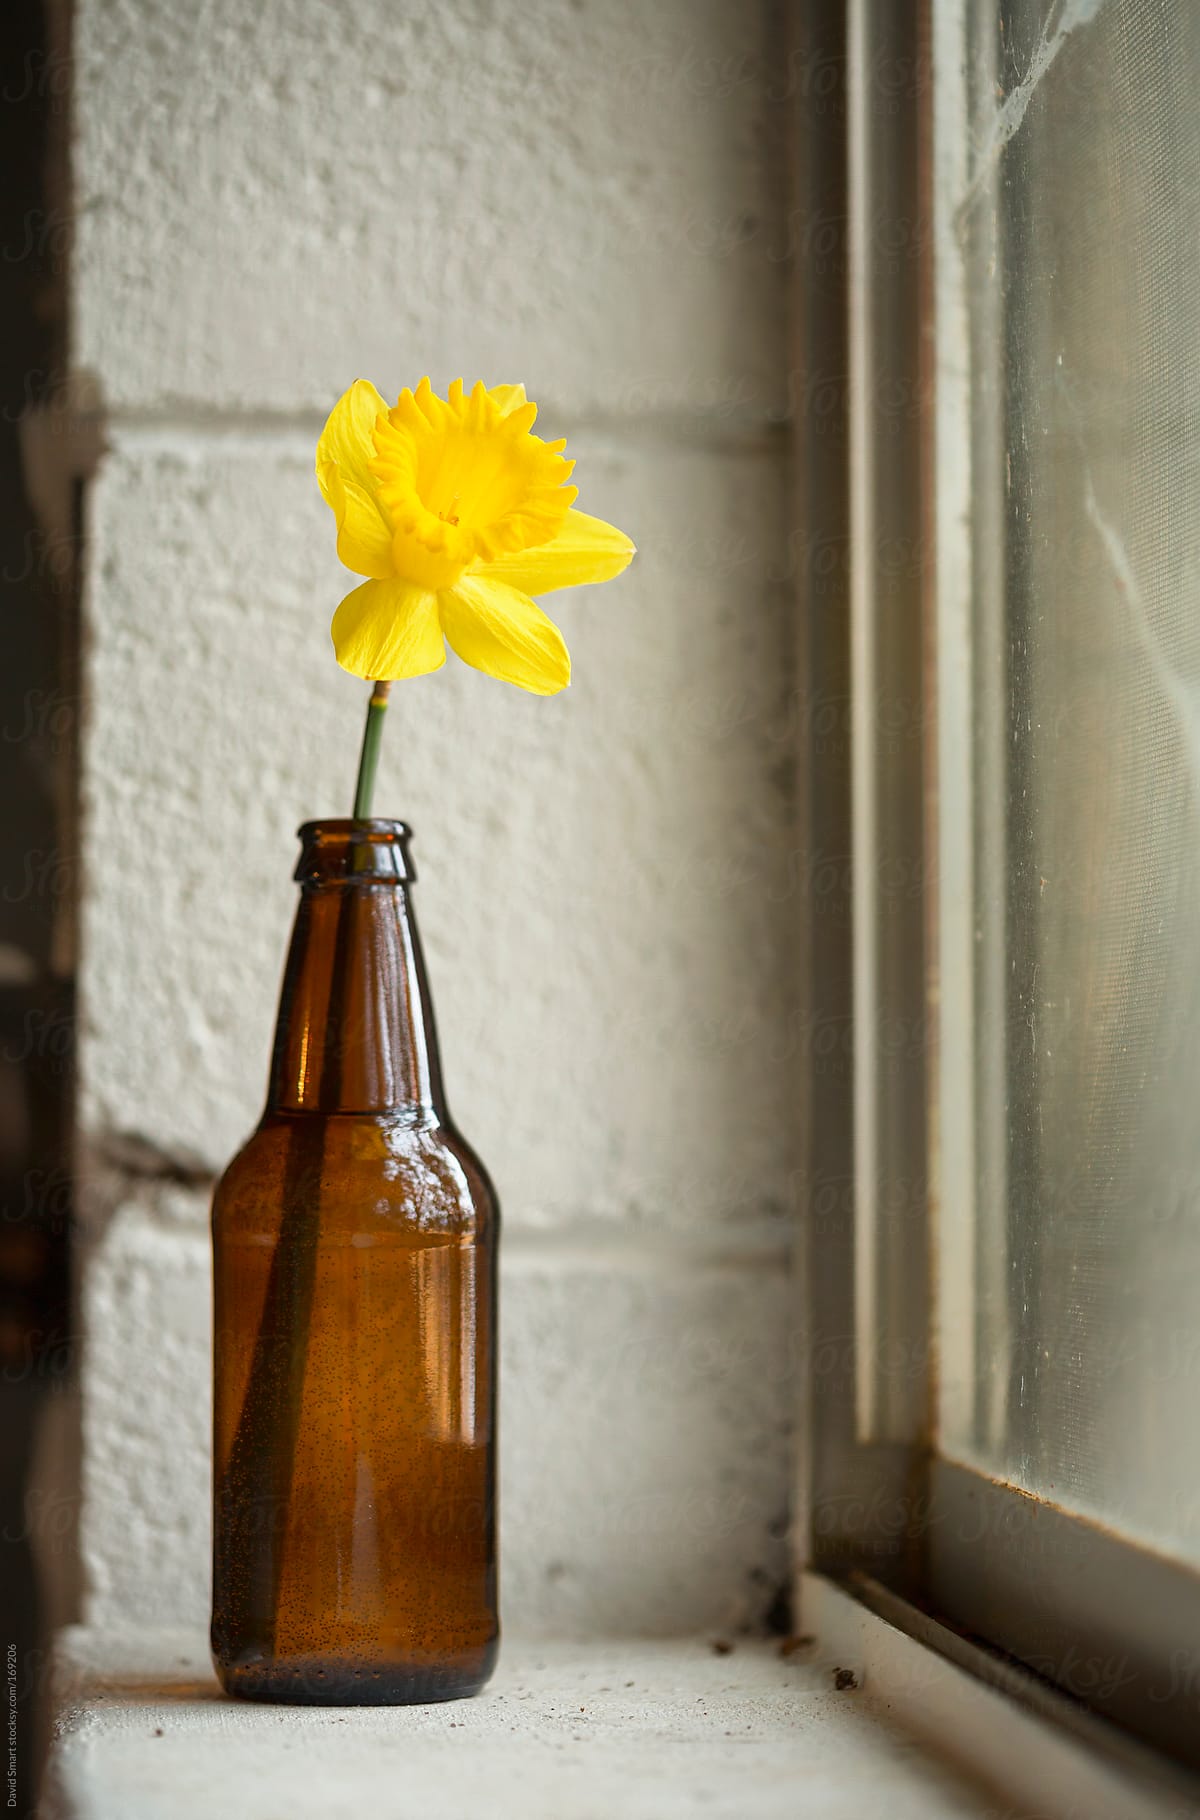 Daffodil in a beer bottle on a basement windowsill